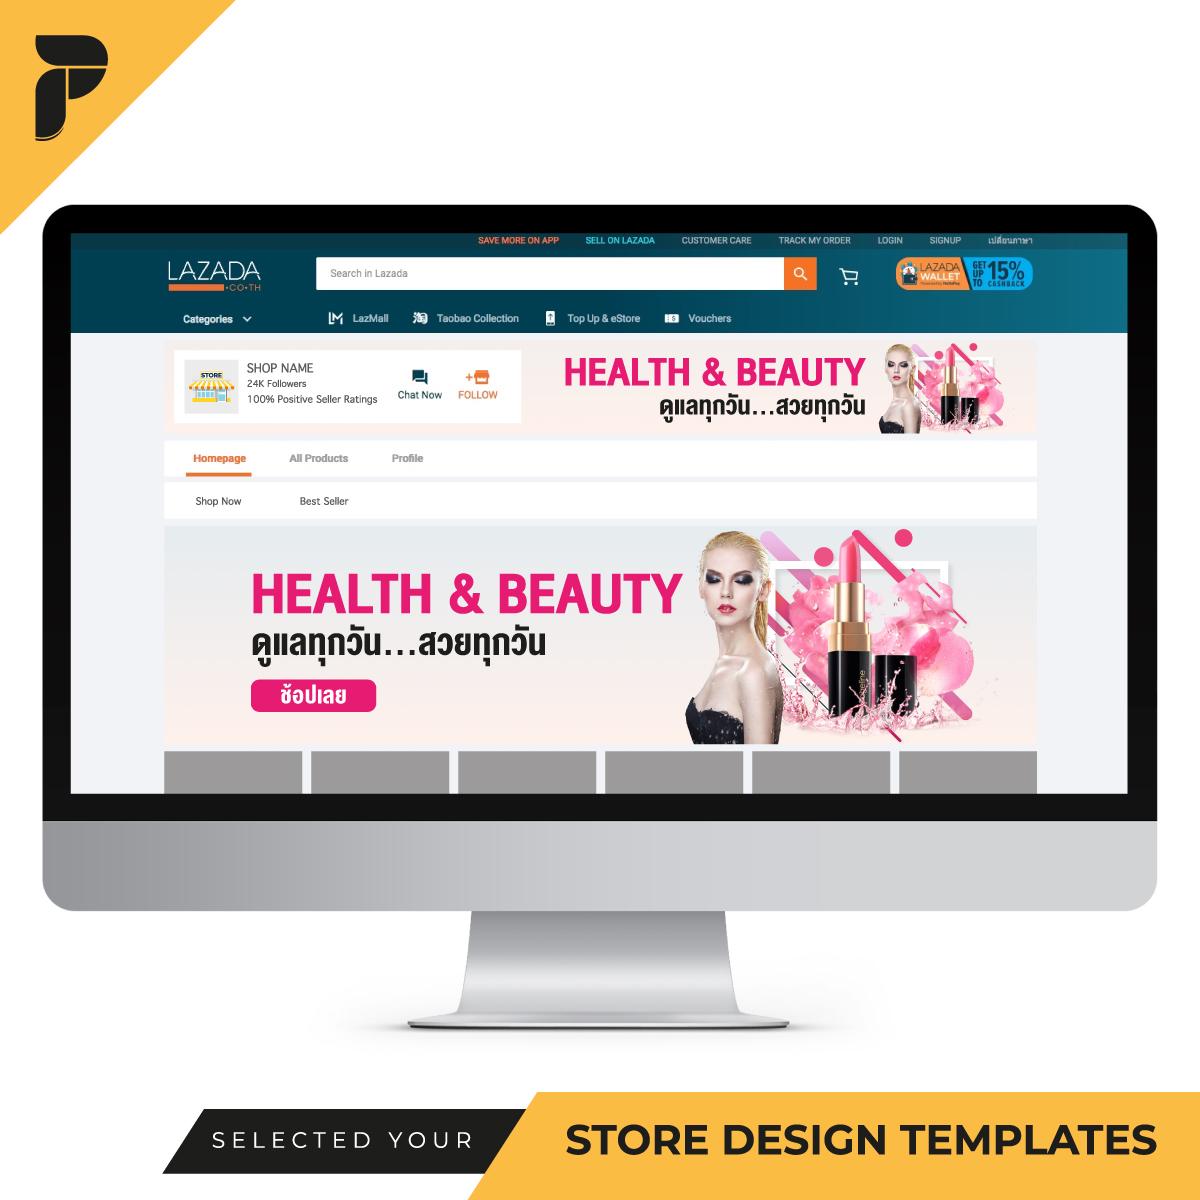 Store Design Templates Banner Ready-to-Work by PathGraphic Studio - Health and Beauty แบนเนอร์ตกแต่งร้าน แบนเนอร์สำเร็จรูป สำหรับตกแต่งหน้าร้านค้าออนไลน์